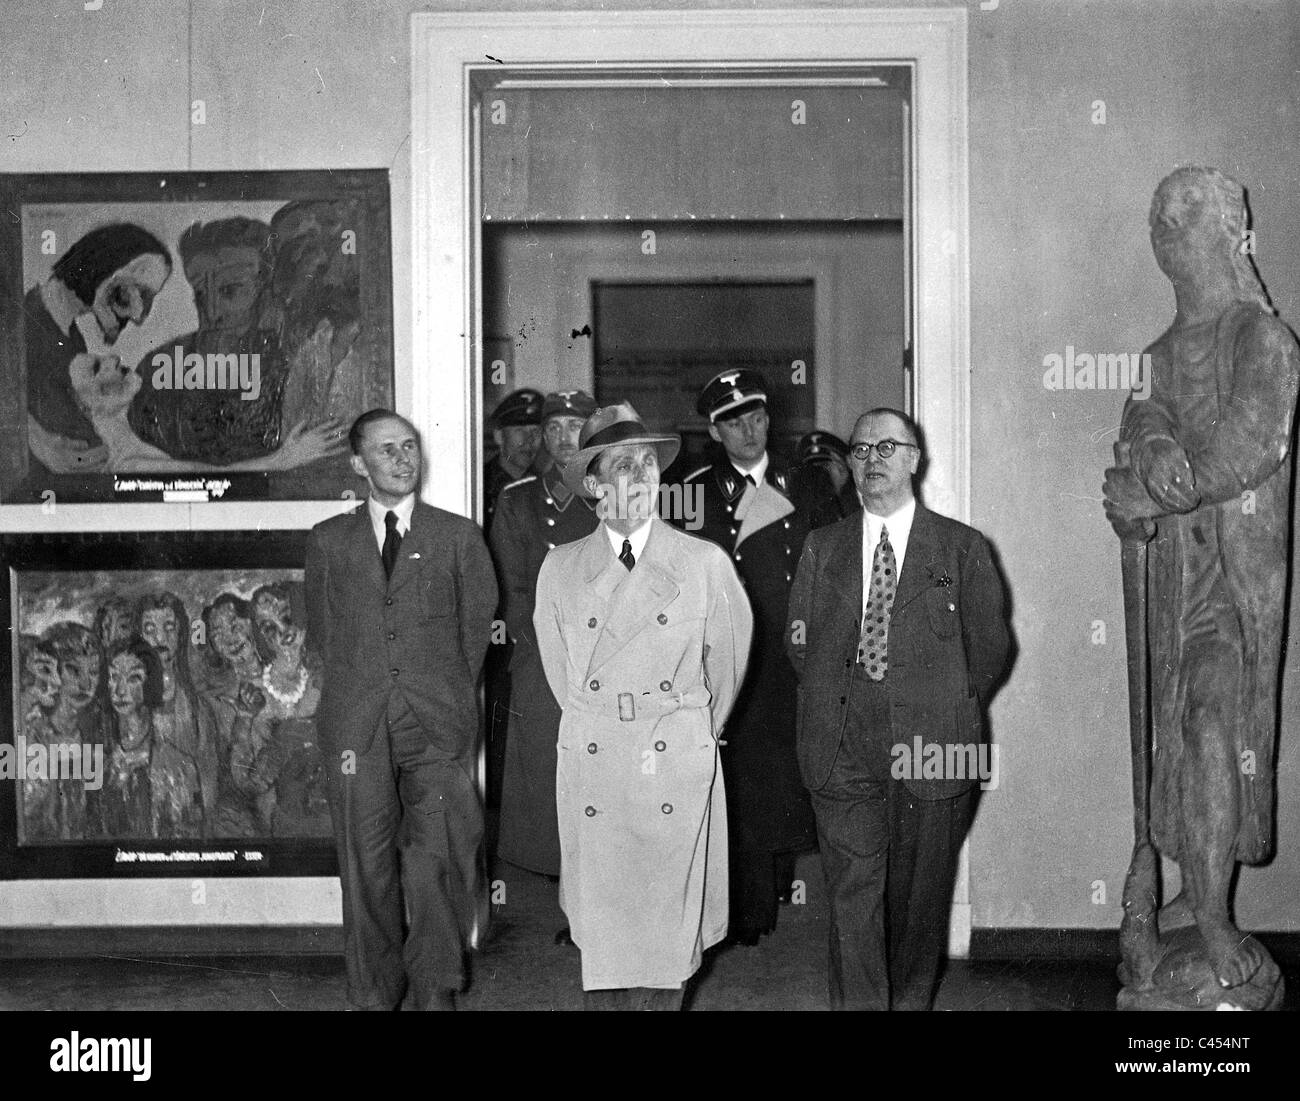 Goebbels dans l'exposition 'Art' egenerated dans la chambre d'art de Berlin, 1938 Banque D'Images